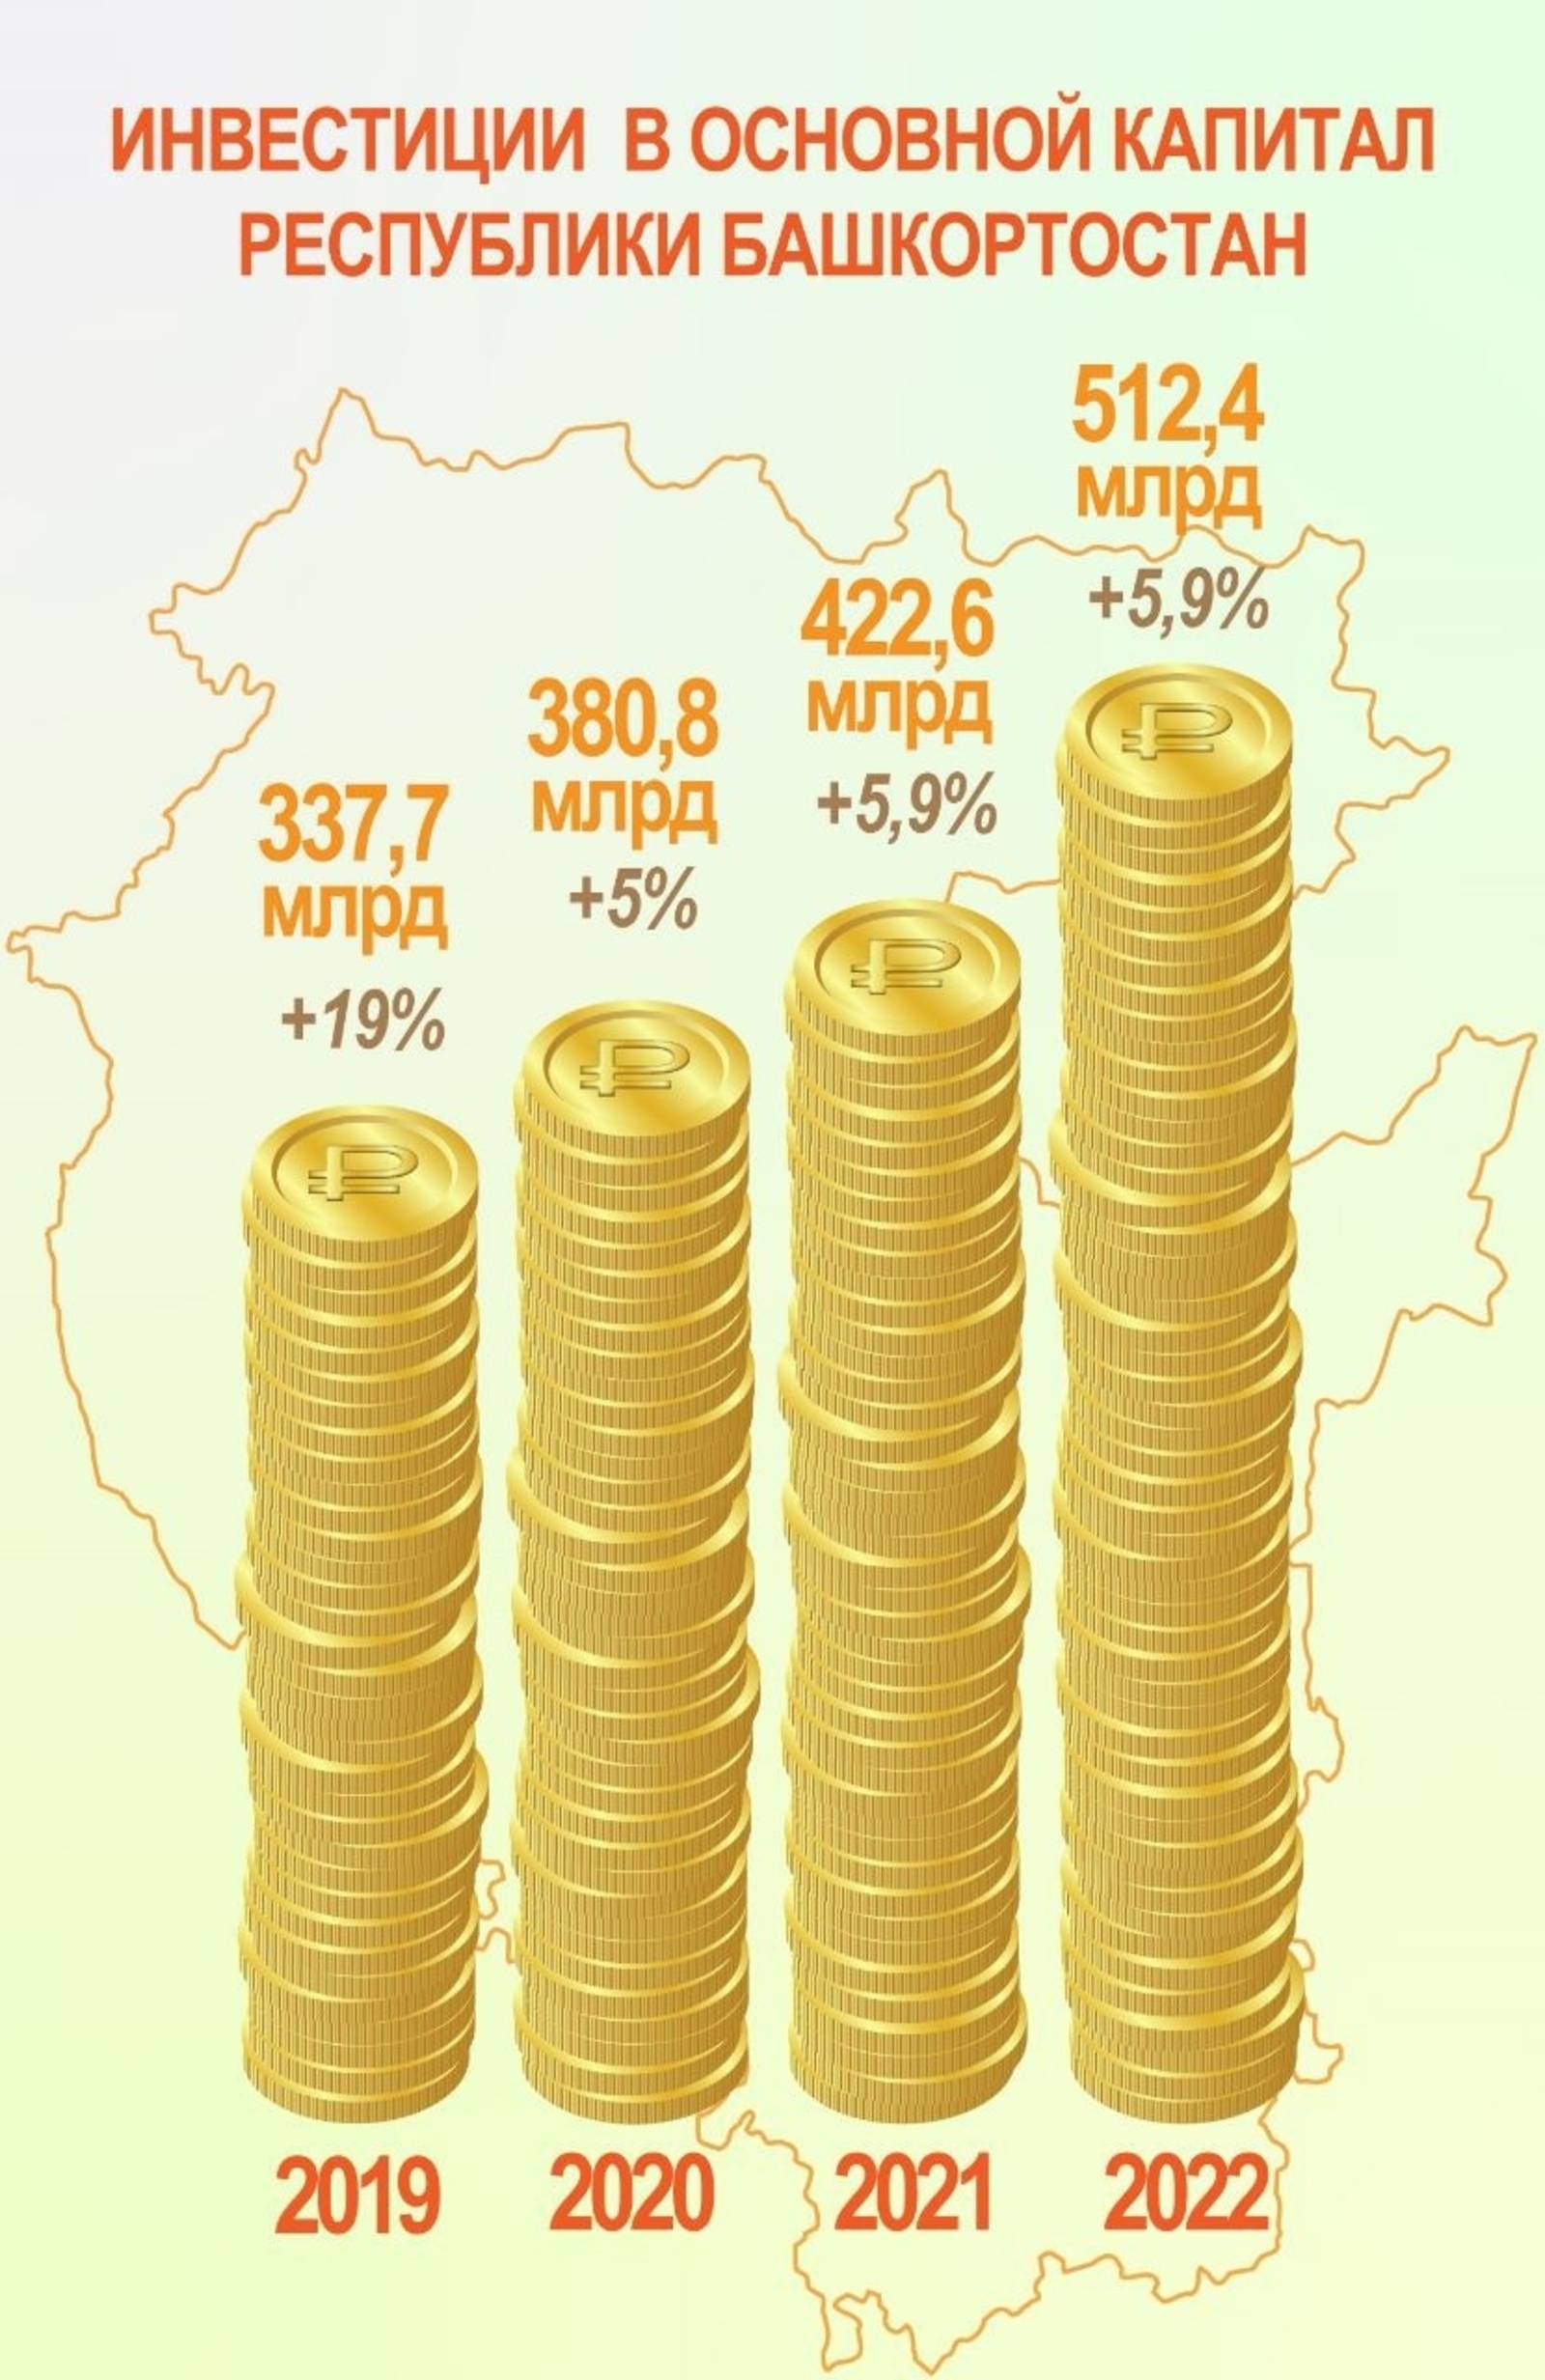 В Башкирии достигнут исторический максимум по объемам инвестиций